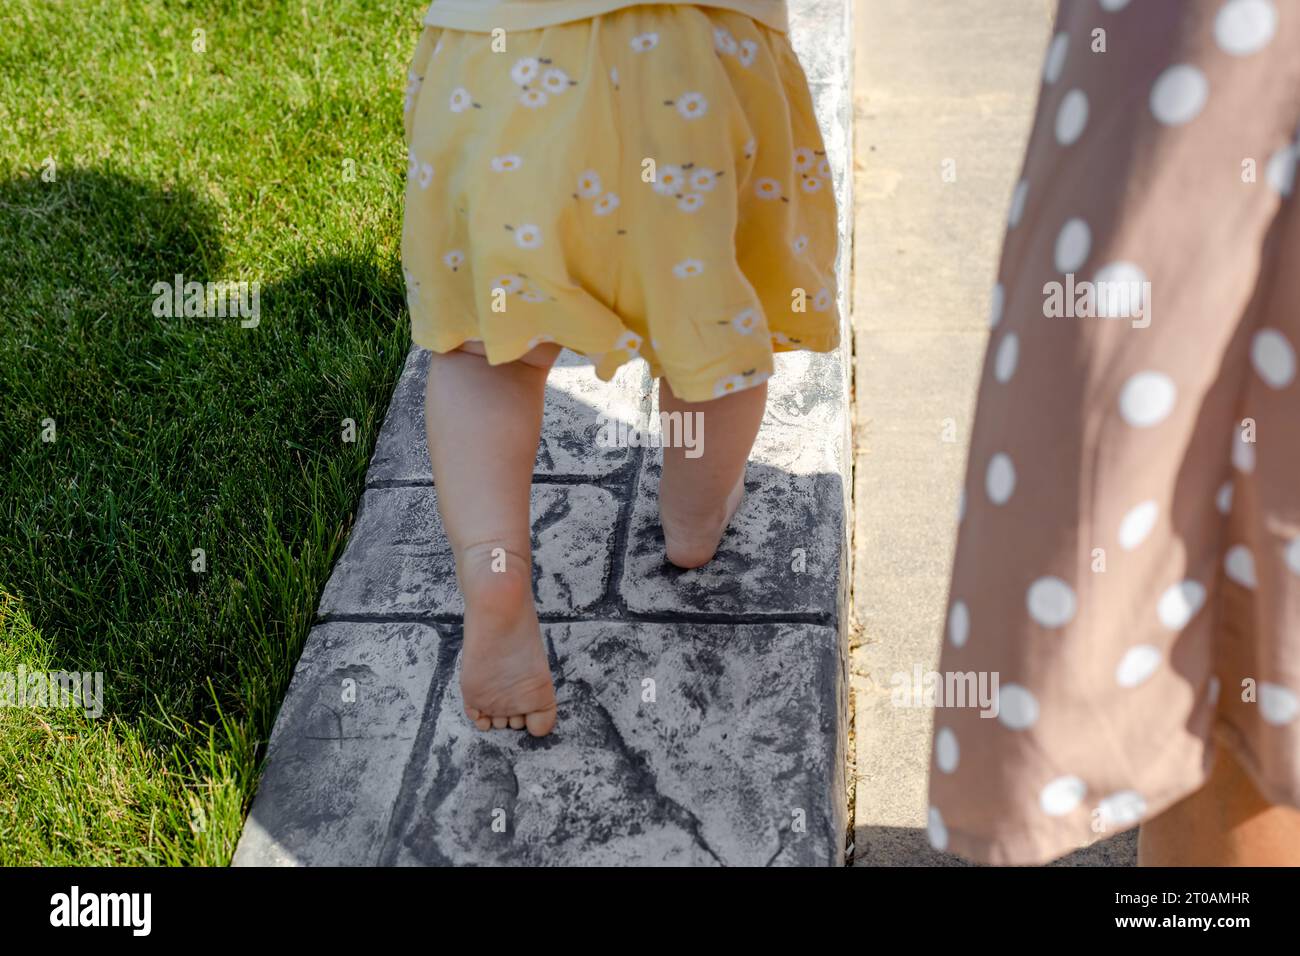 Ein kleines Kind läuft barfuß auf dem Rasen entlang der Bordsteinkante, Rückansicht. Die ersten Schritte Ihres Babys. Stockfoto